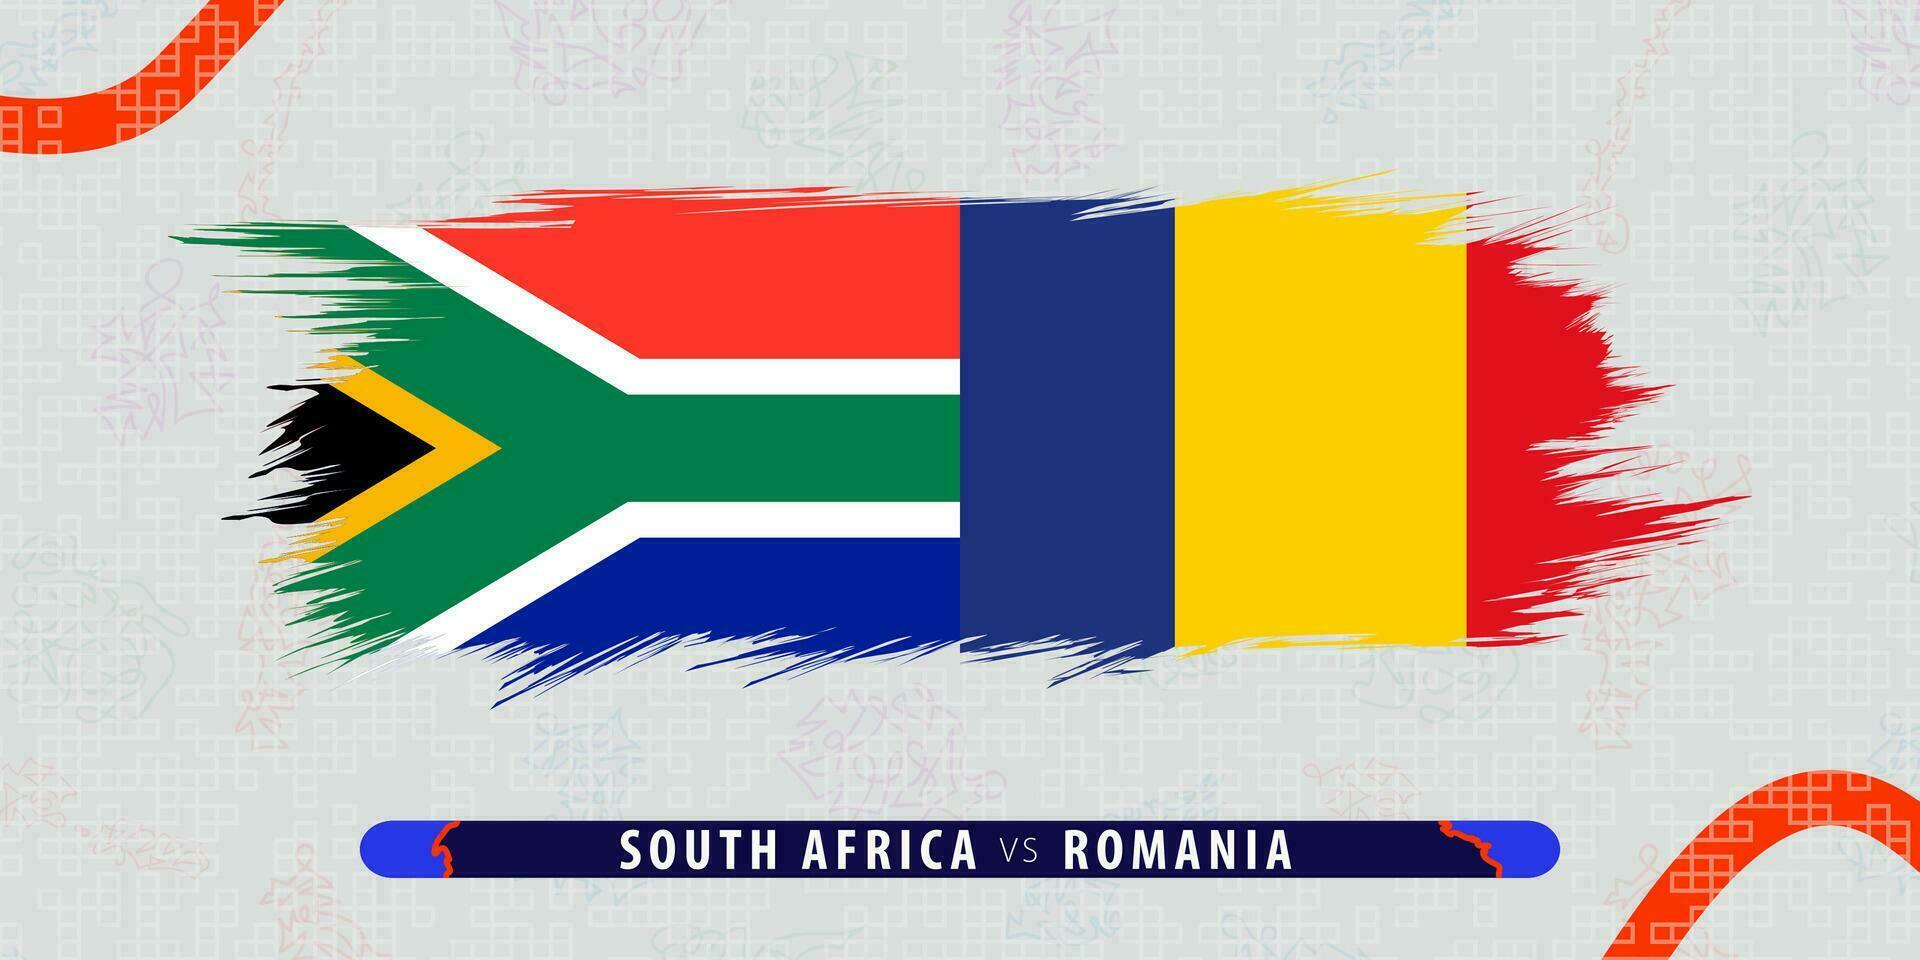 Süd Afrika vs. Rumänien, International Rugby Spiel Illustration im Pinselstrich Stil. abstrakt grungy Symbol zum Rugby passen. vektor